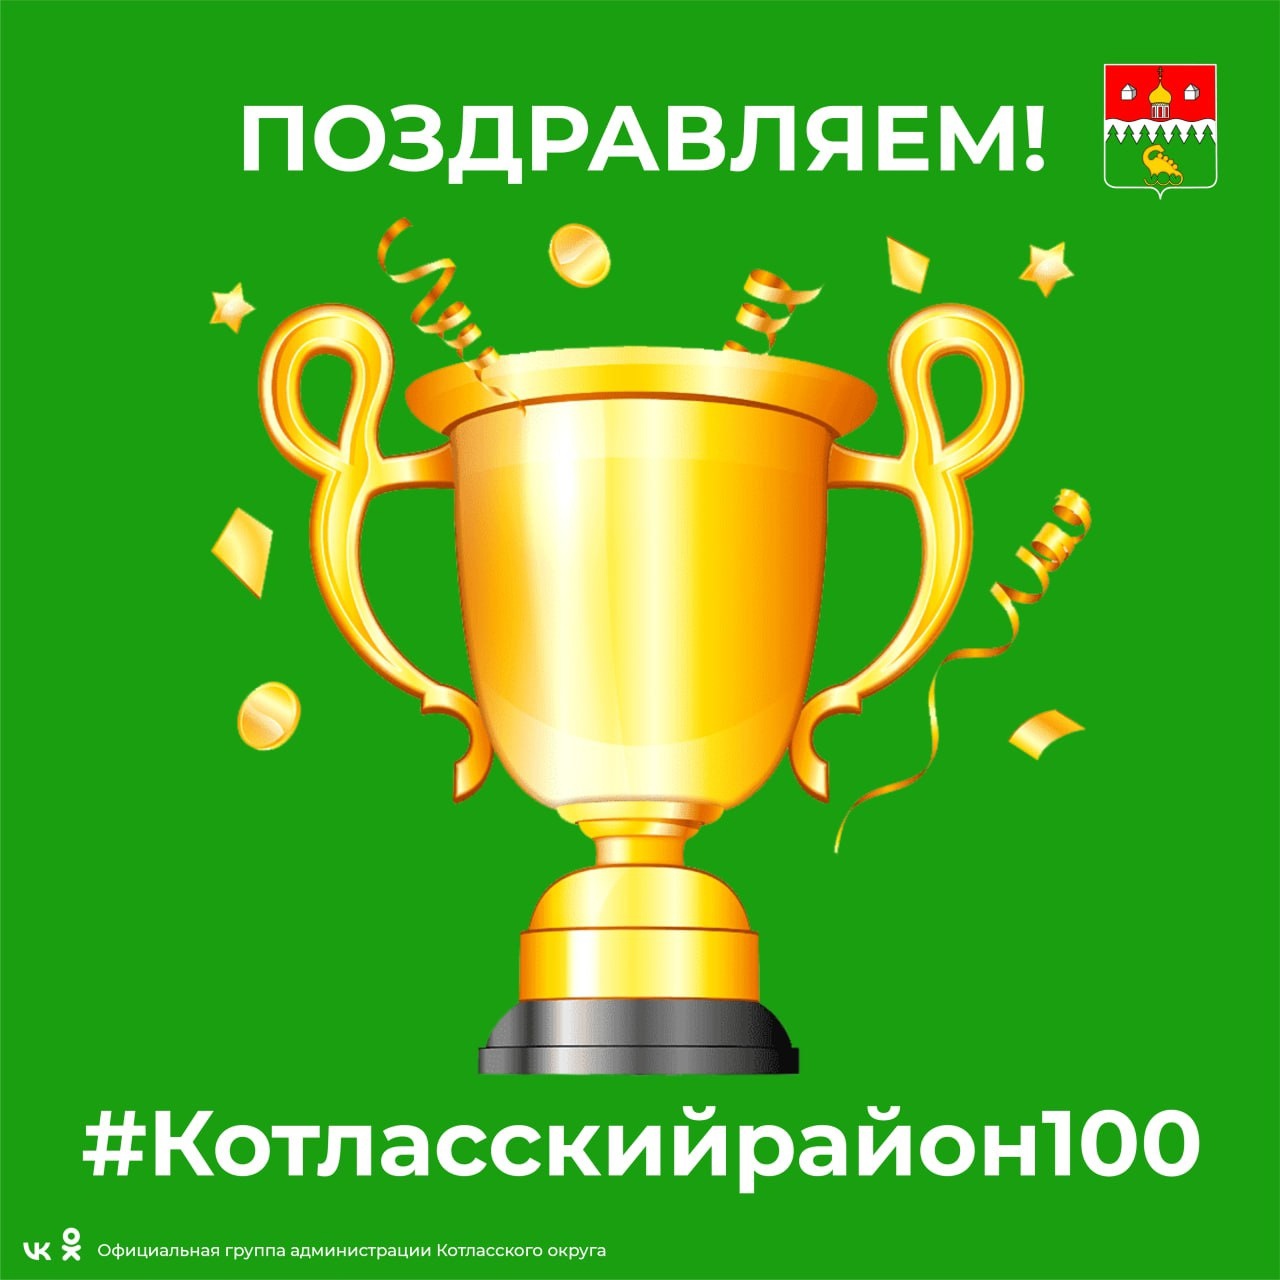 Мы готовы объявить ПОБЕДИТЕЛЯ нашего фотофлешмоба #Котласскийрайон100 по итогам зрительского голосования.